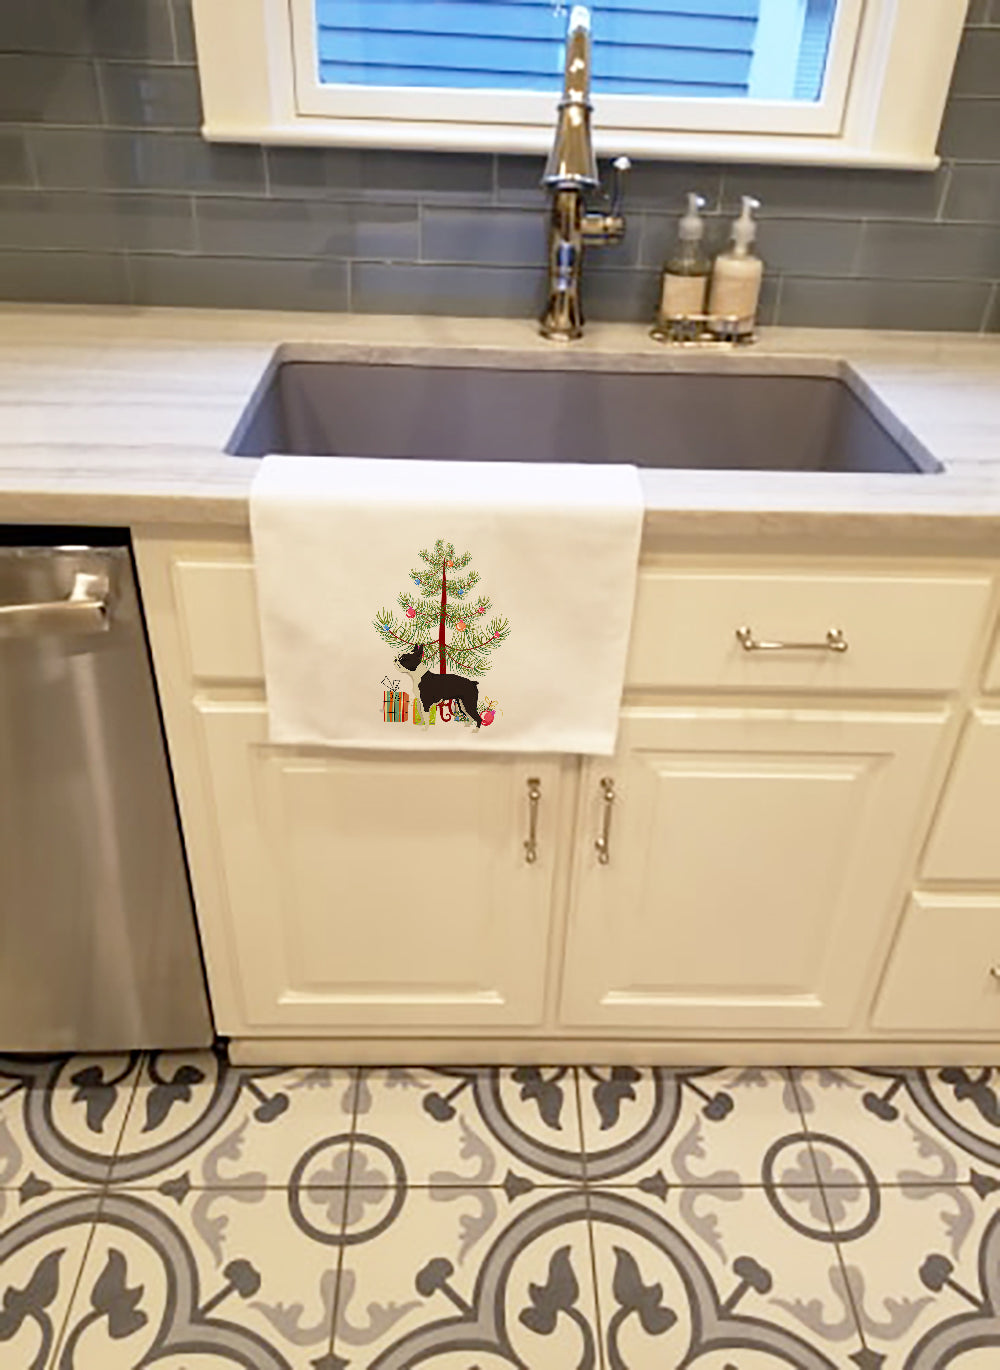 Buy this Boston Terrier Christmas Tree White Kitchen Towel Set of 2